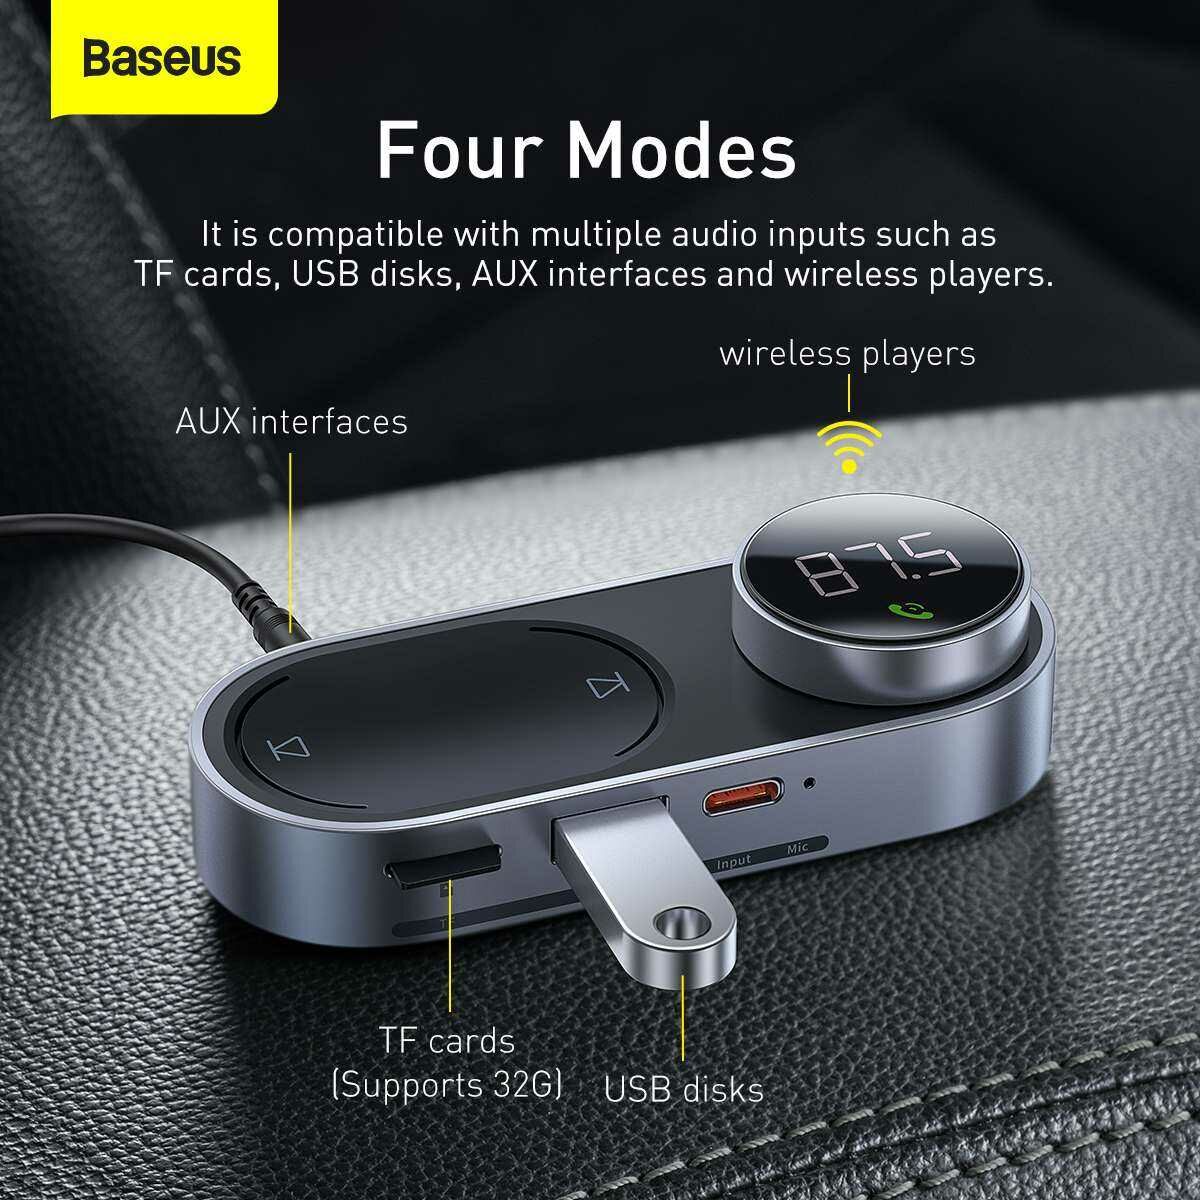 Baseus autós kiegészítő, Solar Car napelemes, Bluetooth vezetéknélküli MP3, BT 5.0, Mágneses töltő csatlak, USB, AUX, fekete (CDMP000001)